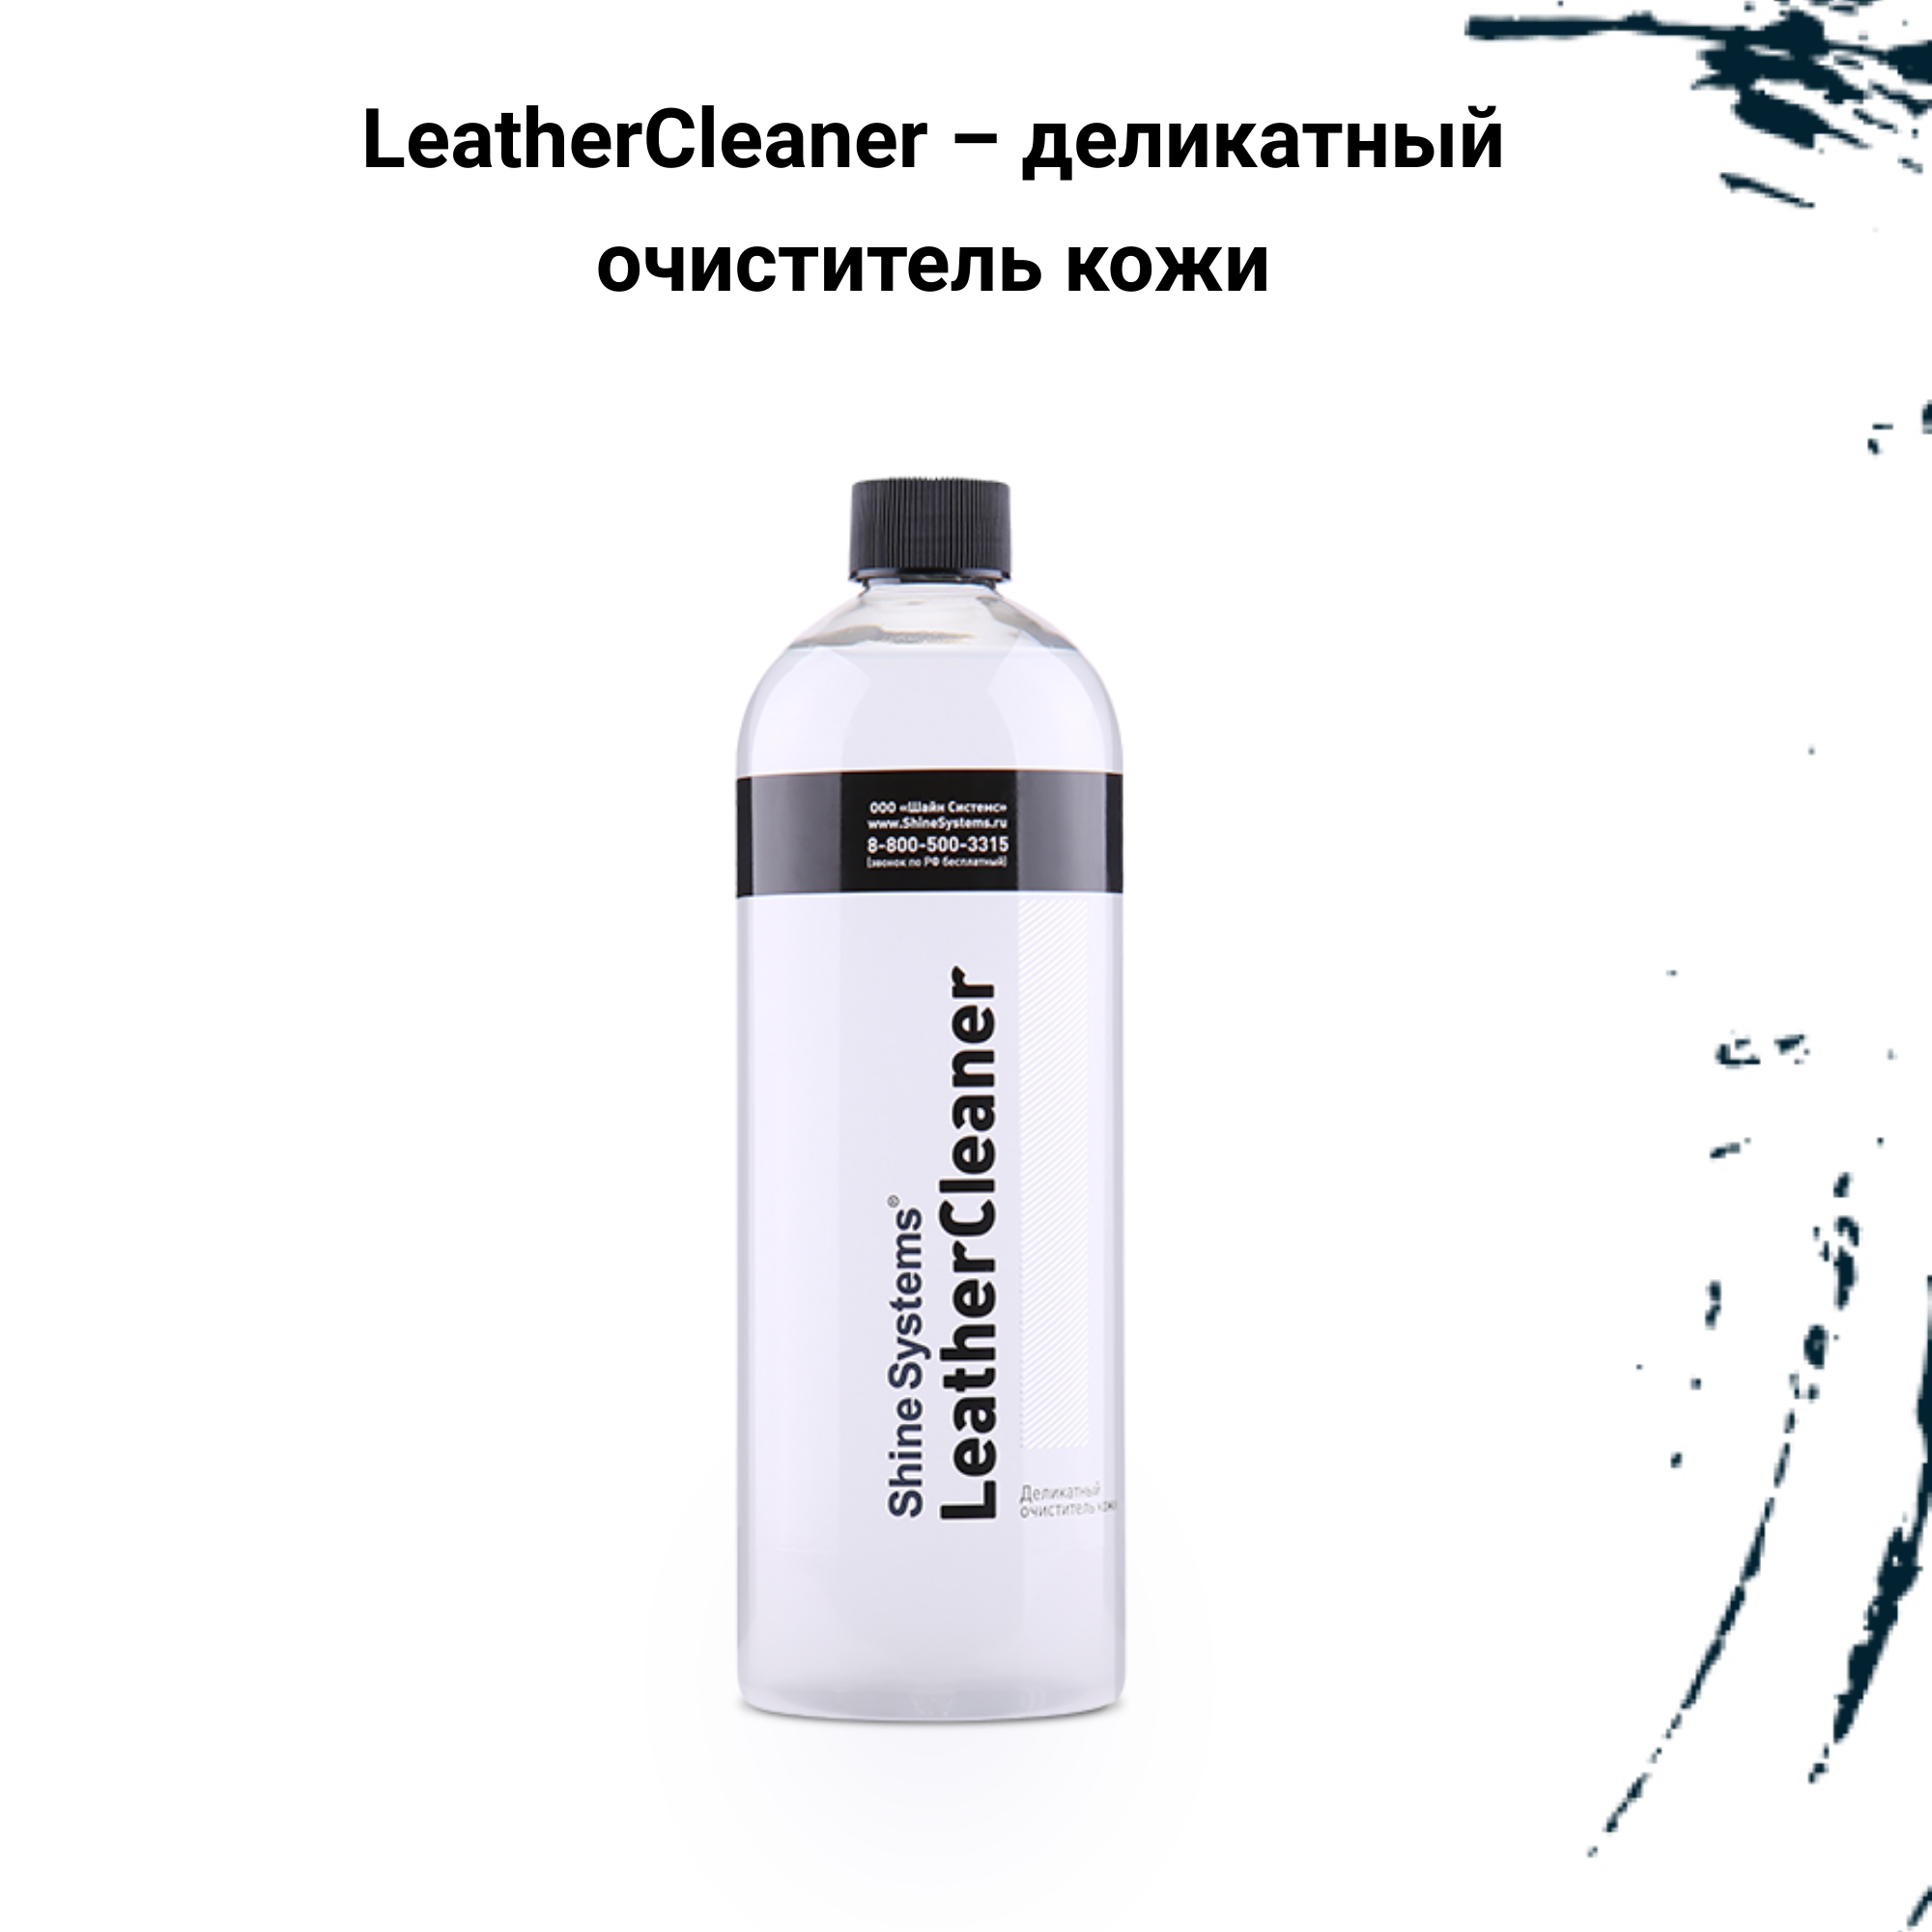 Leather Cleaner - Деликатный очиститель кожи, 750 мл